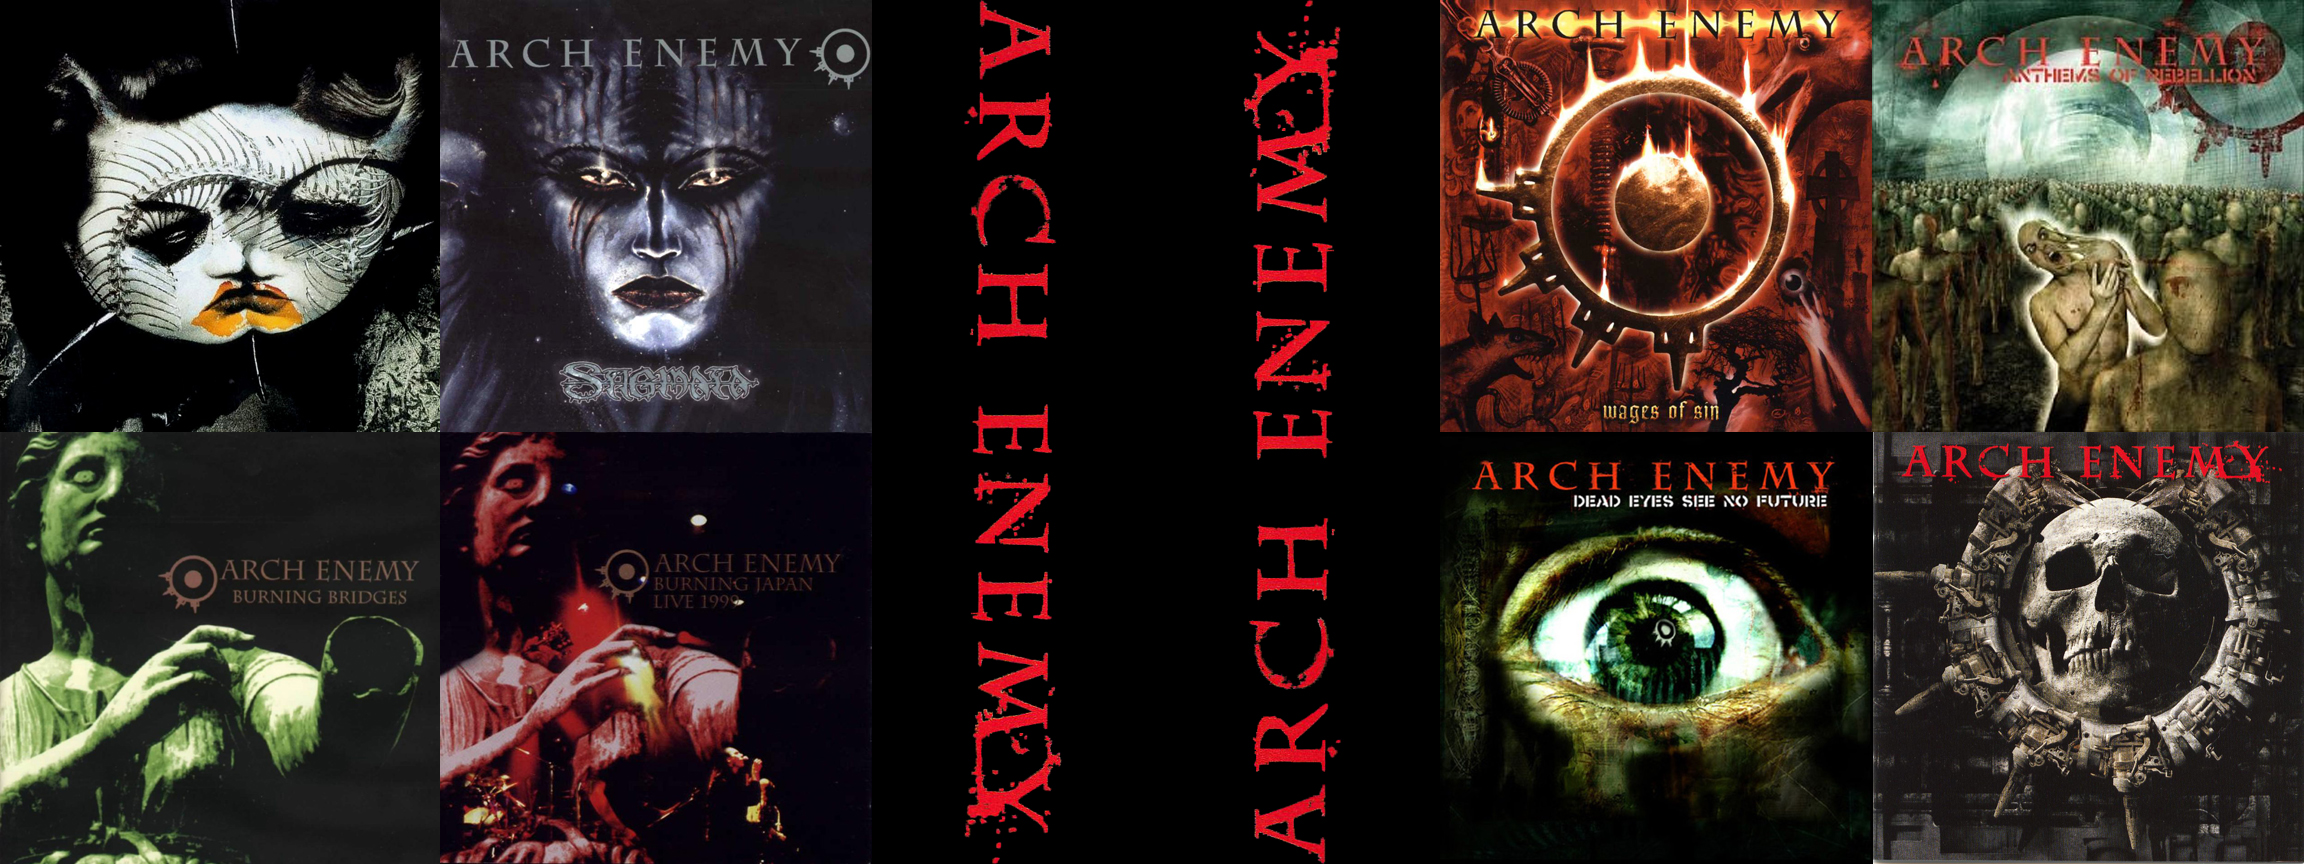 Music Arch Enemy 2304x864